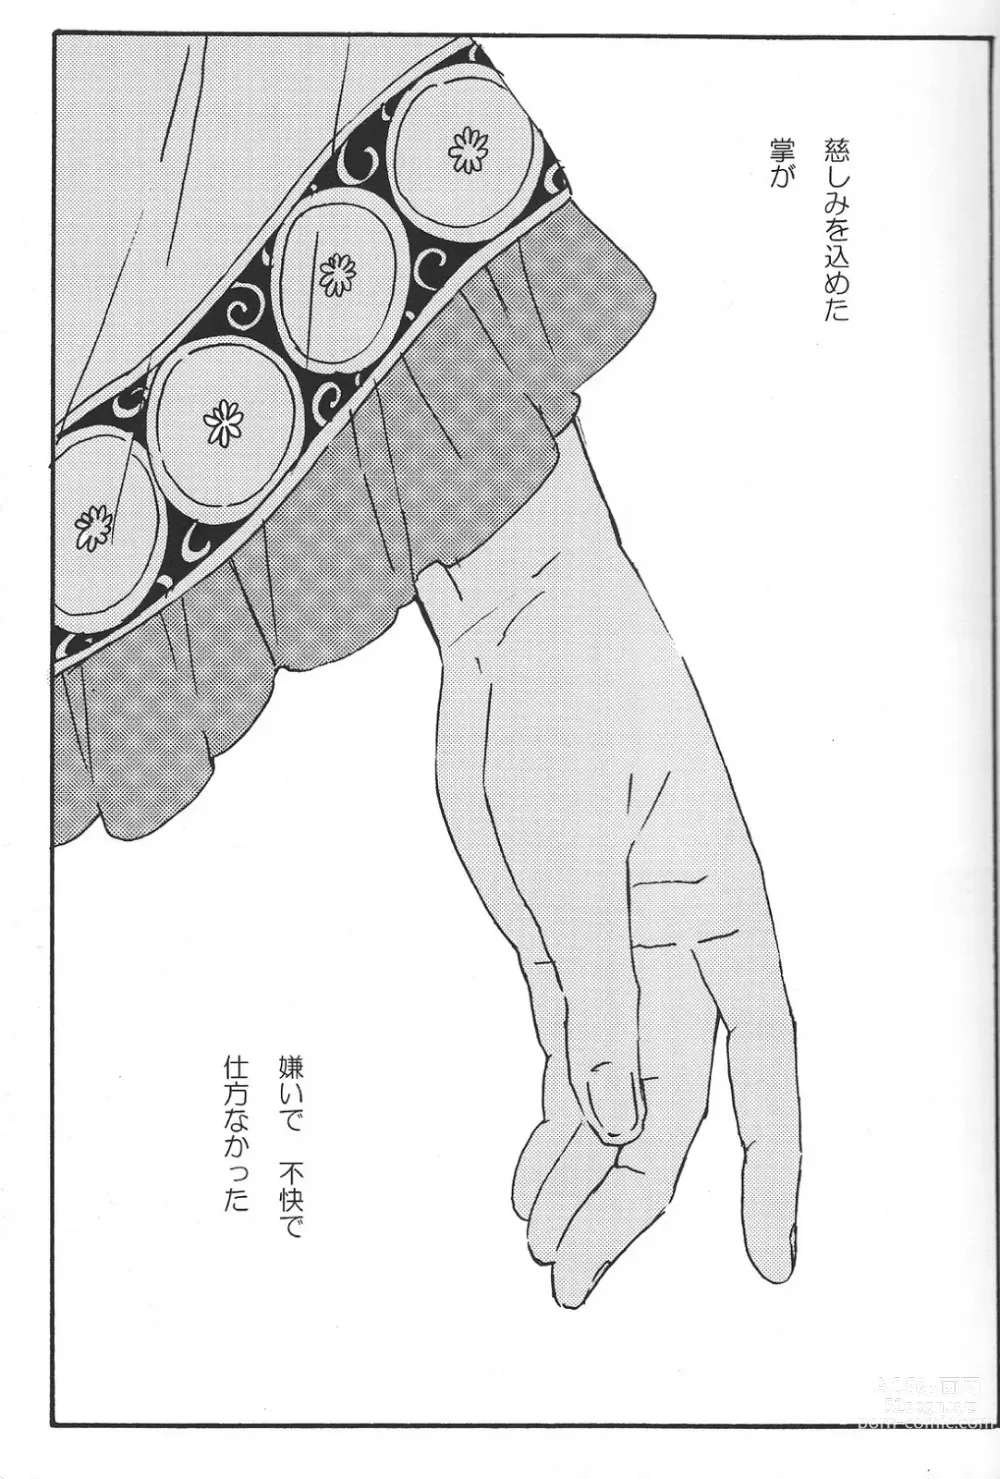 Page 2 of doujinshi Hikkakikizu